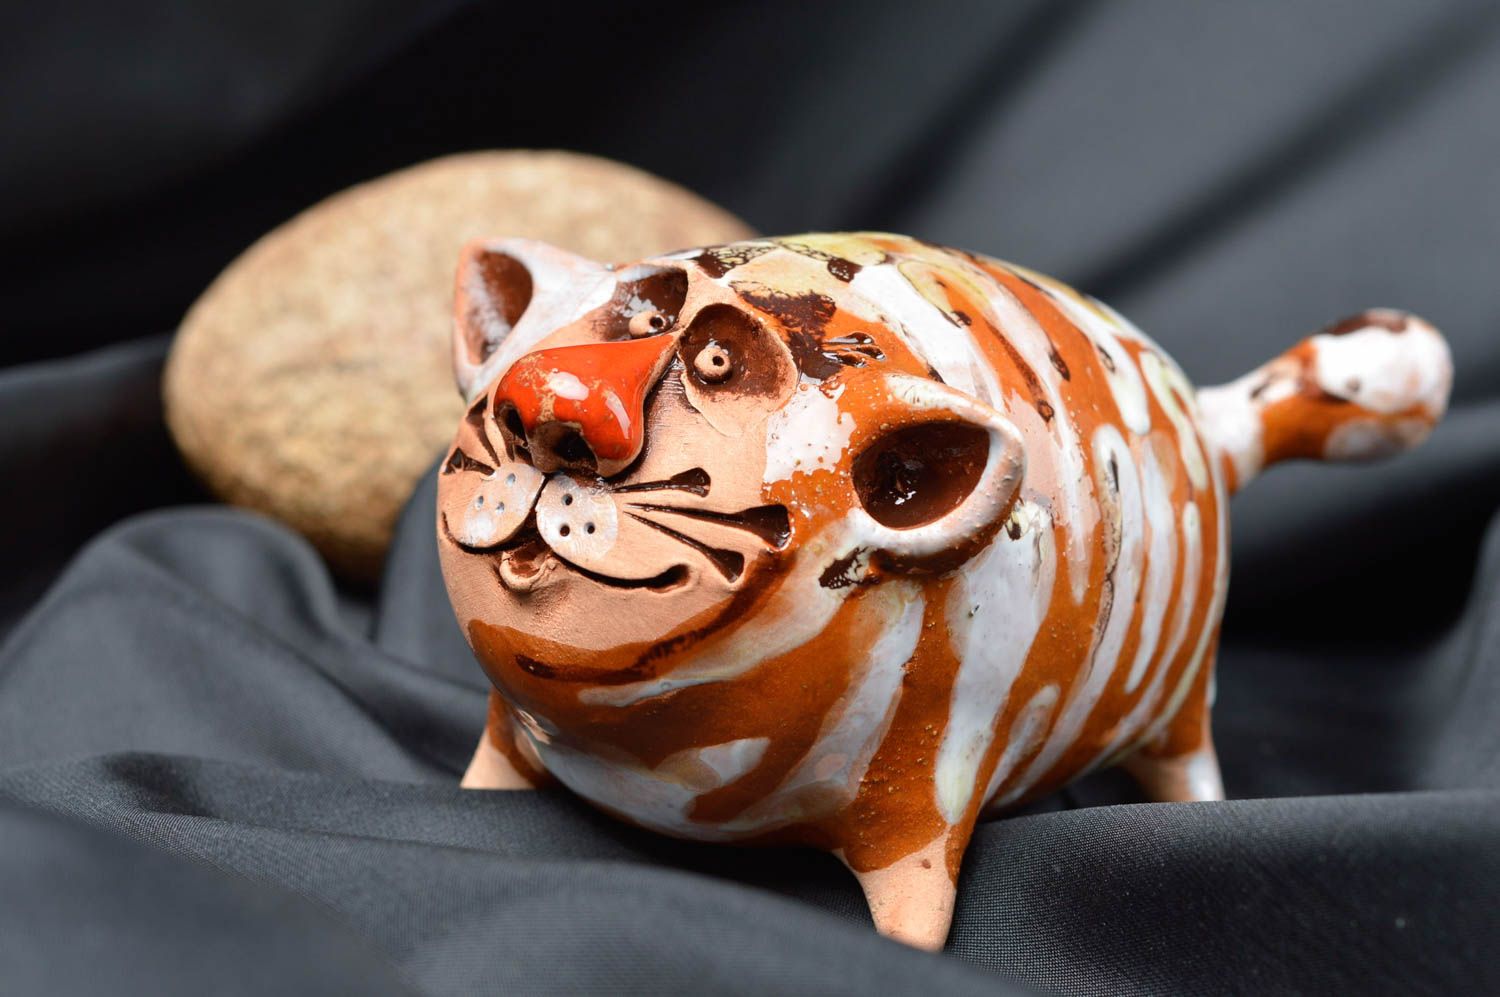 Ceramic animals handmade ceramic figurines cat decor presents for children photo 1